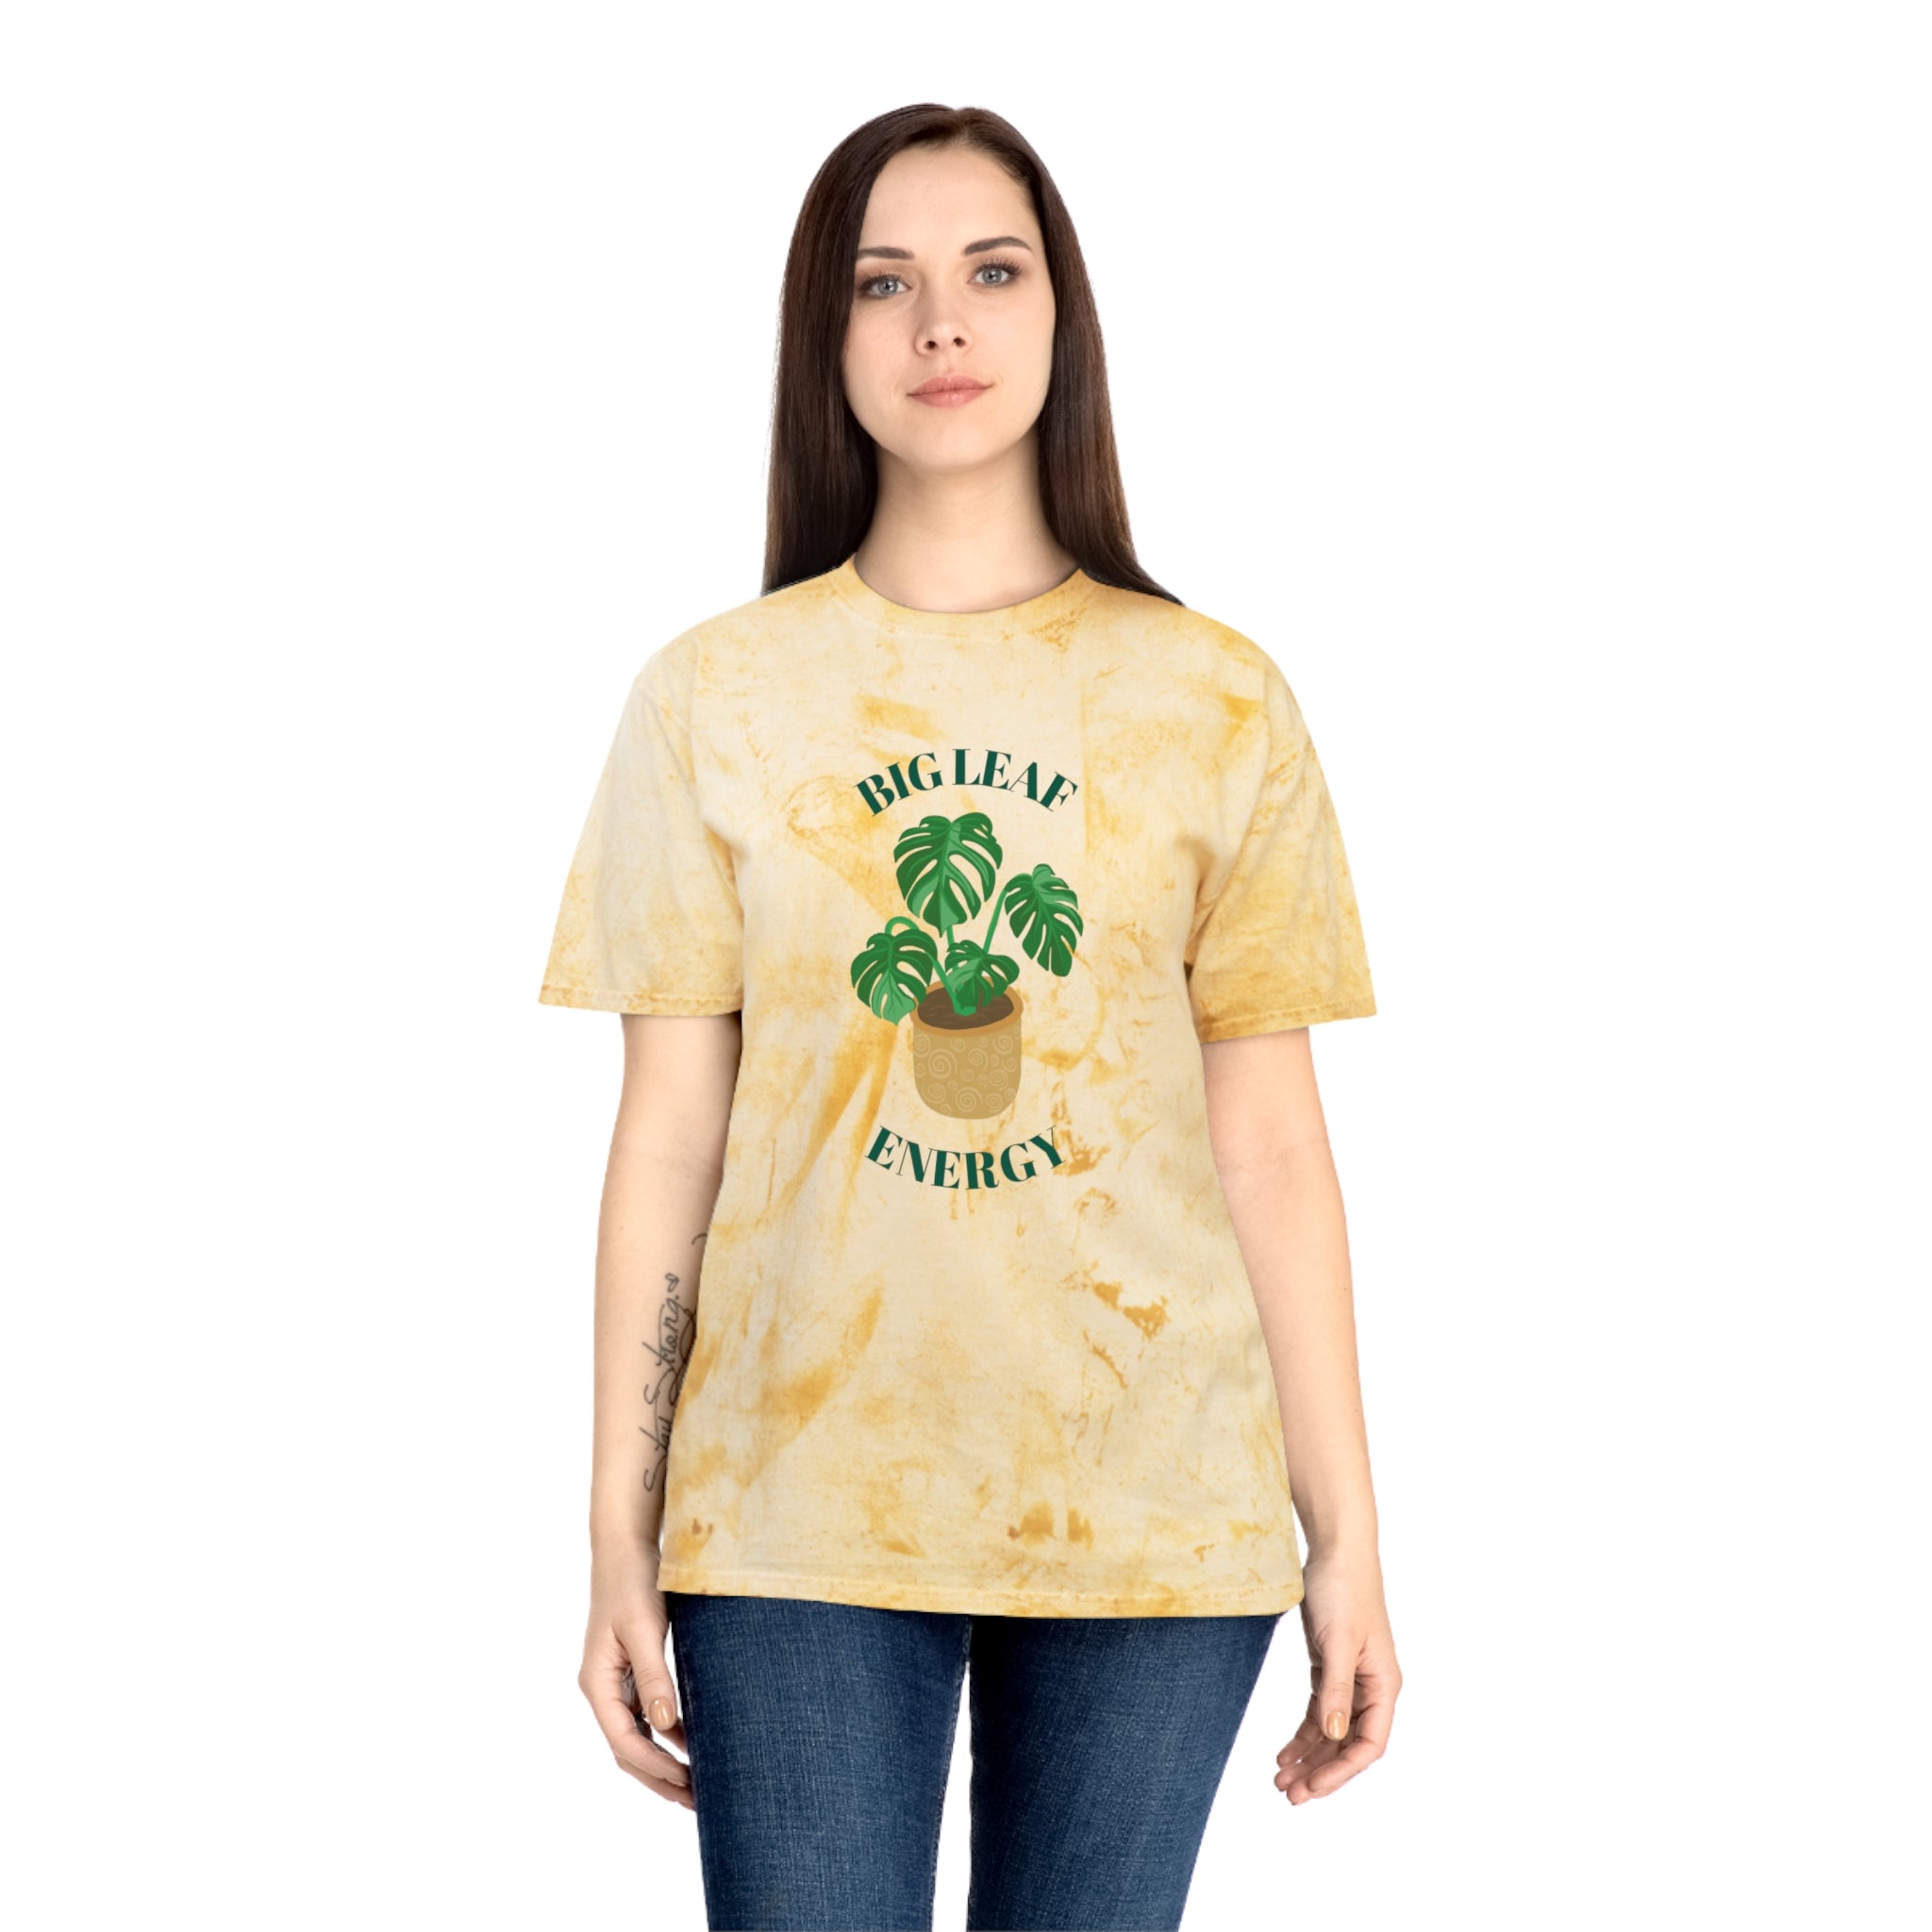 Big Leaf Energy - Comfort Colors T-Shirt - Hive Plants - T-Shirt